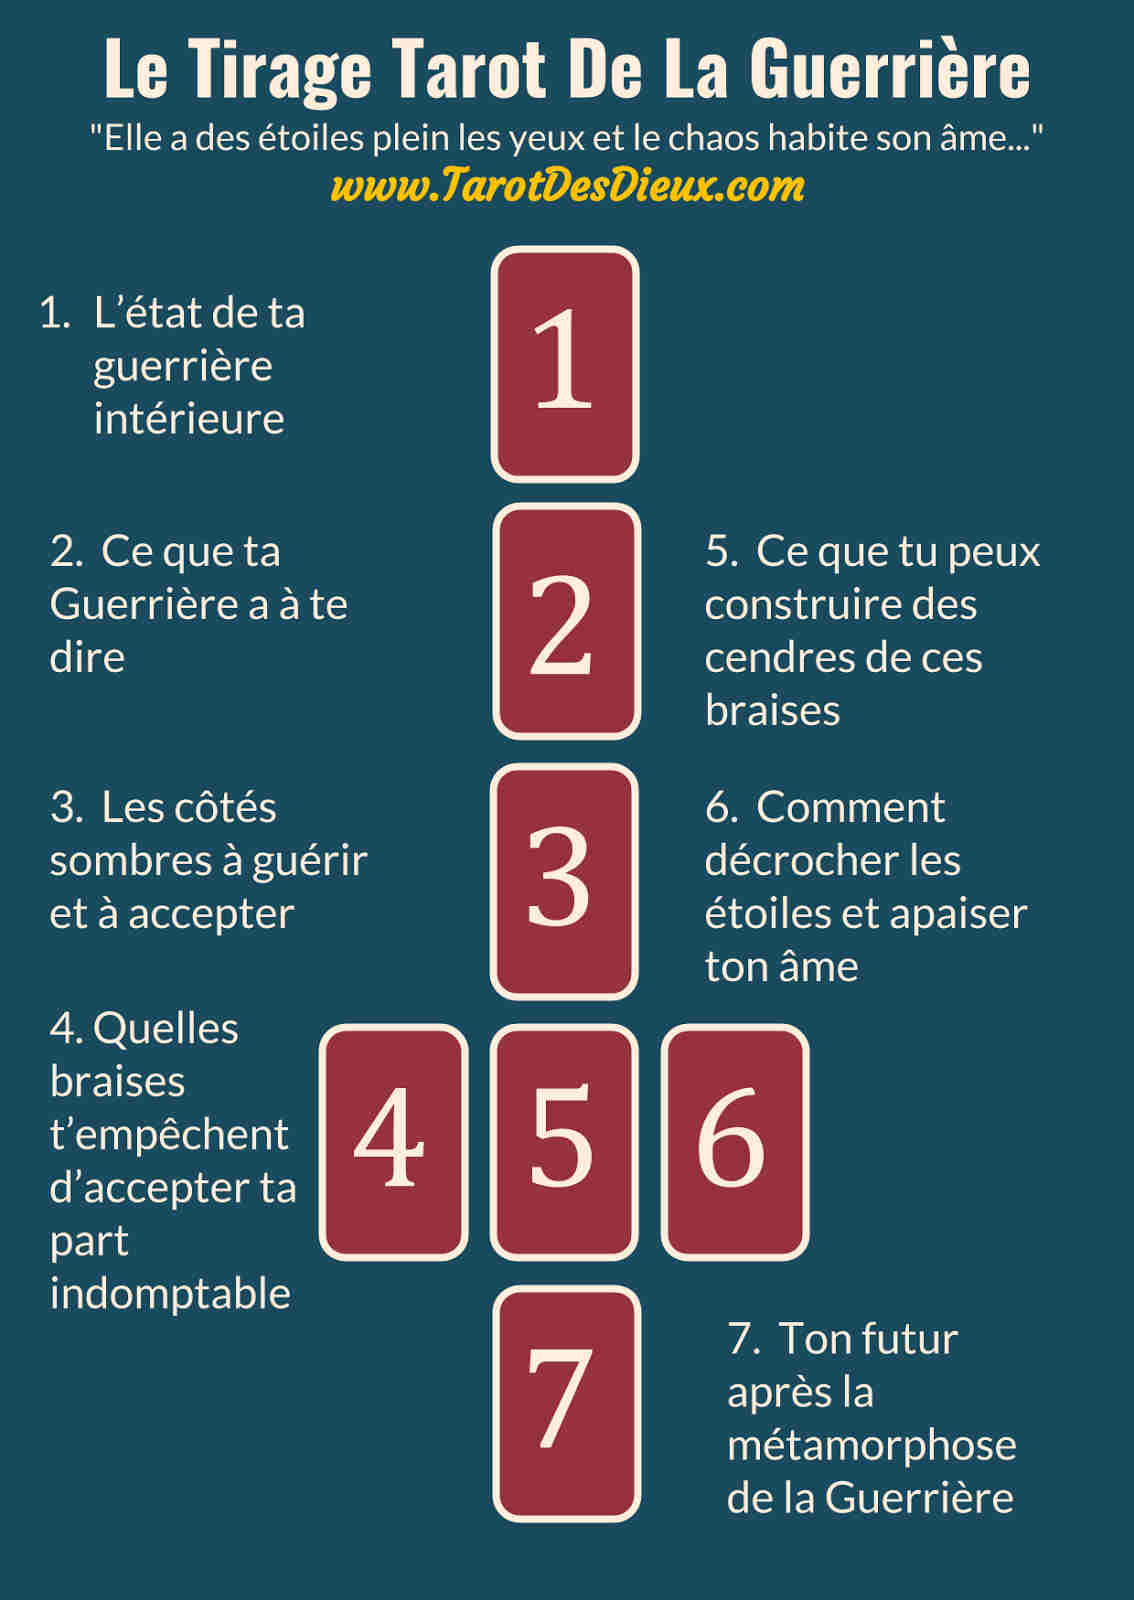 L'image sert de lien vers la page intitulée : Le Tirage Tarot De La Guerrière - Infographic